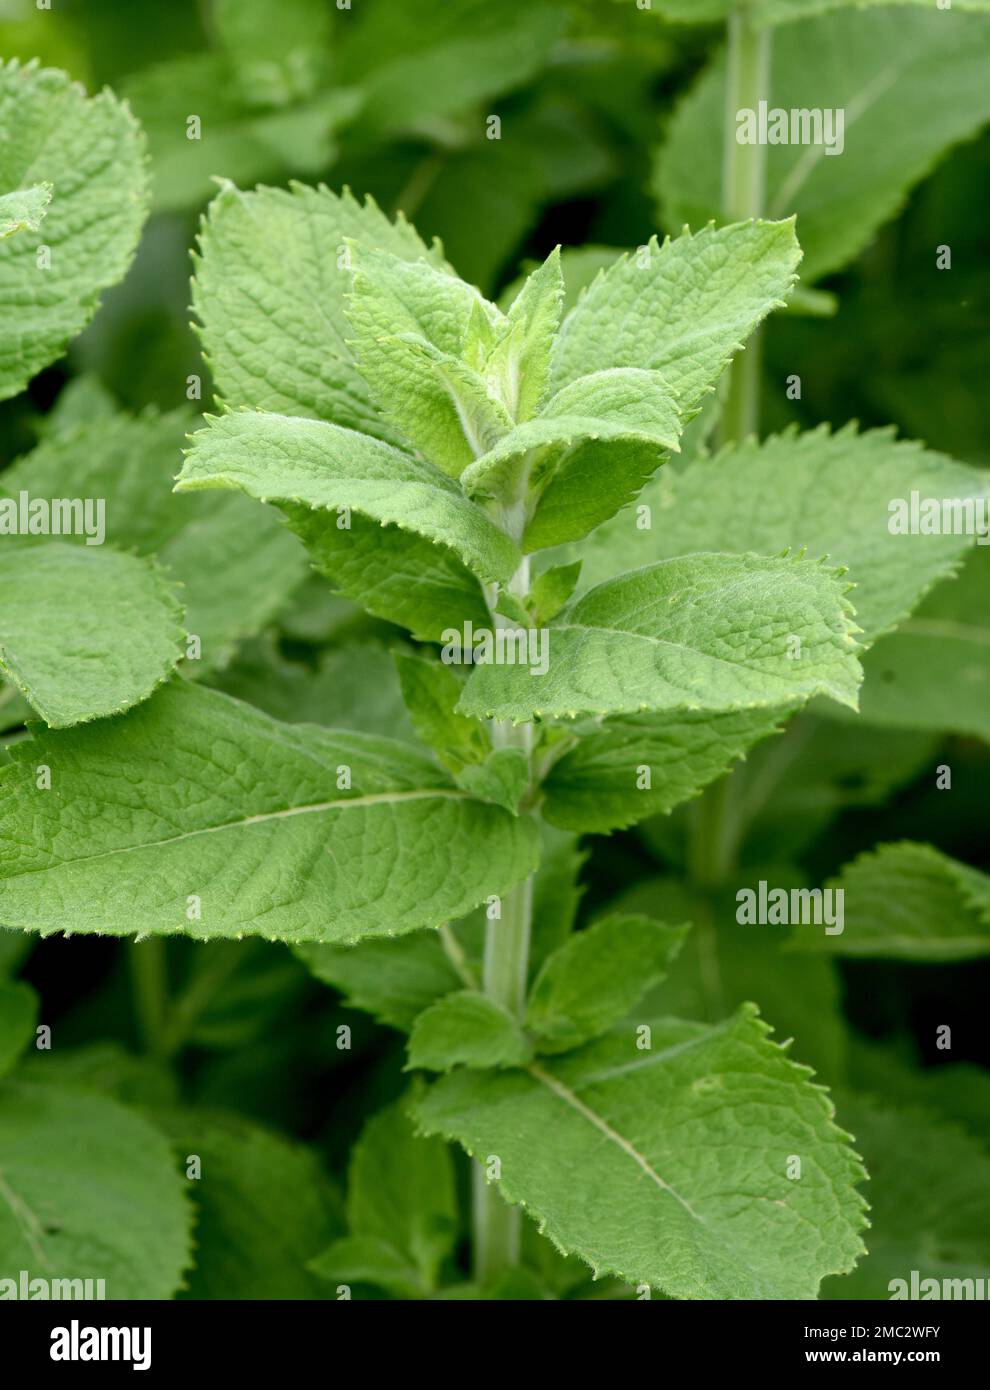 Pfefferminze, Mentha piperita, ist eines der wichtigsten Heilpflanzen und Gewuerzkraeuter in der Kueche und Heilmedizin. Peppermint, Mentha piperita, Stock Photo